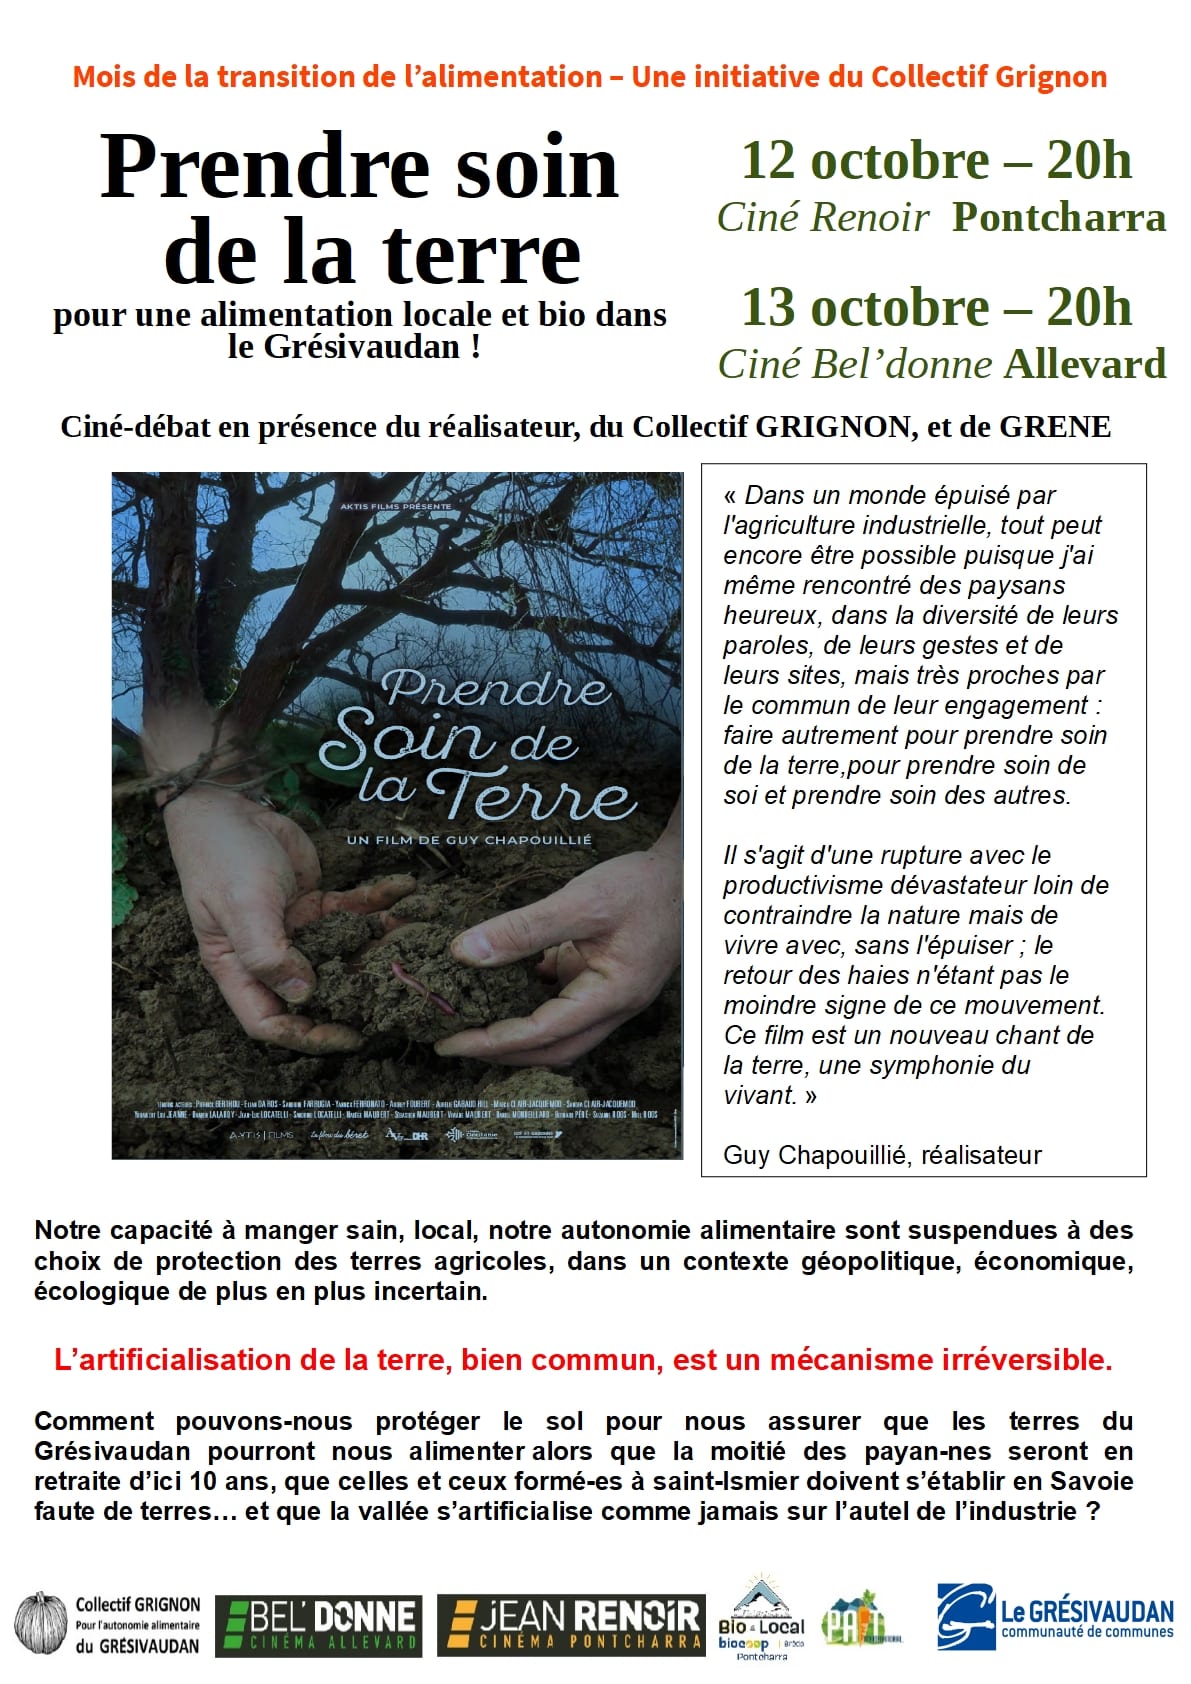 PAiT Grenoble | Projection en avant-première et débat autour du documentaire « Prendre soin de la terre ! » en présence du réalisateur